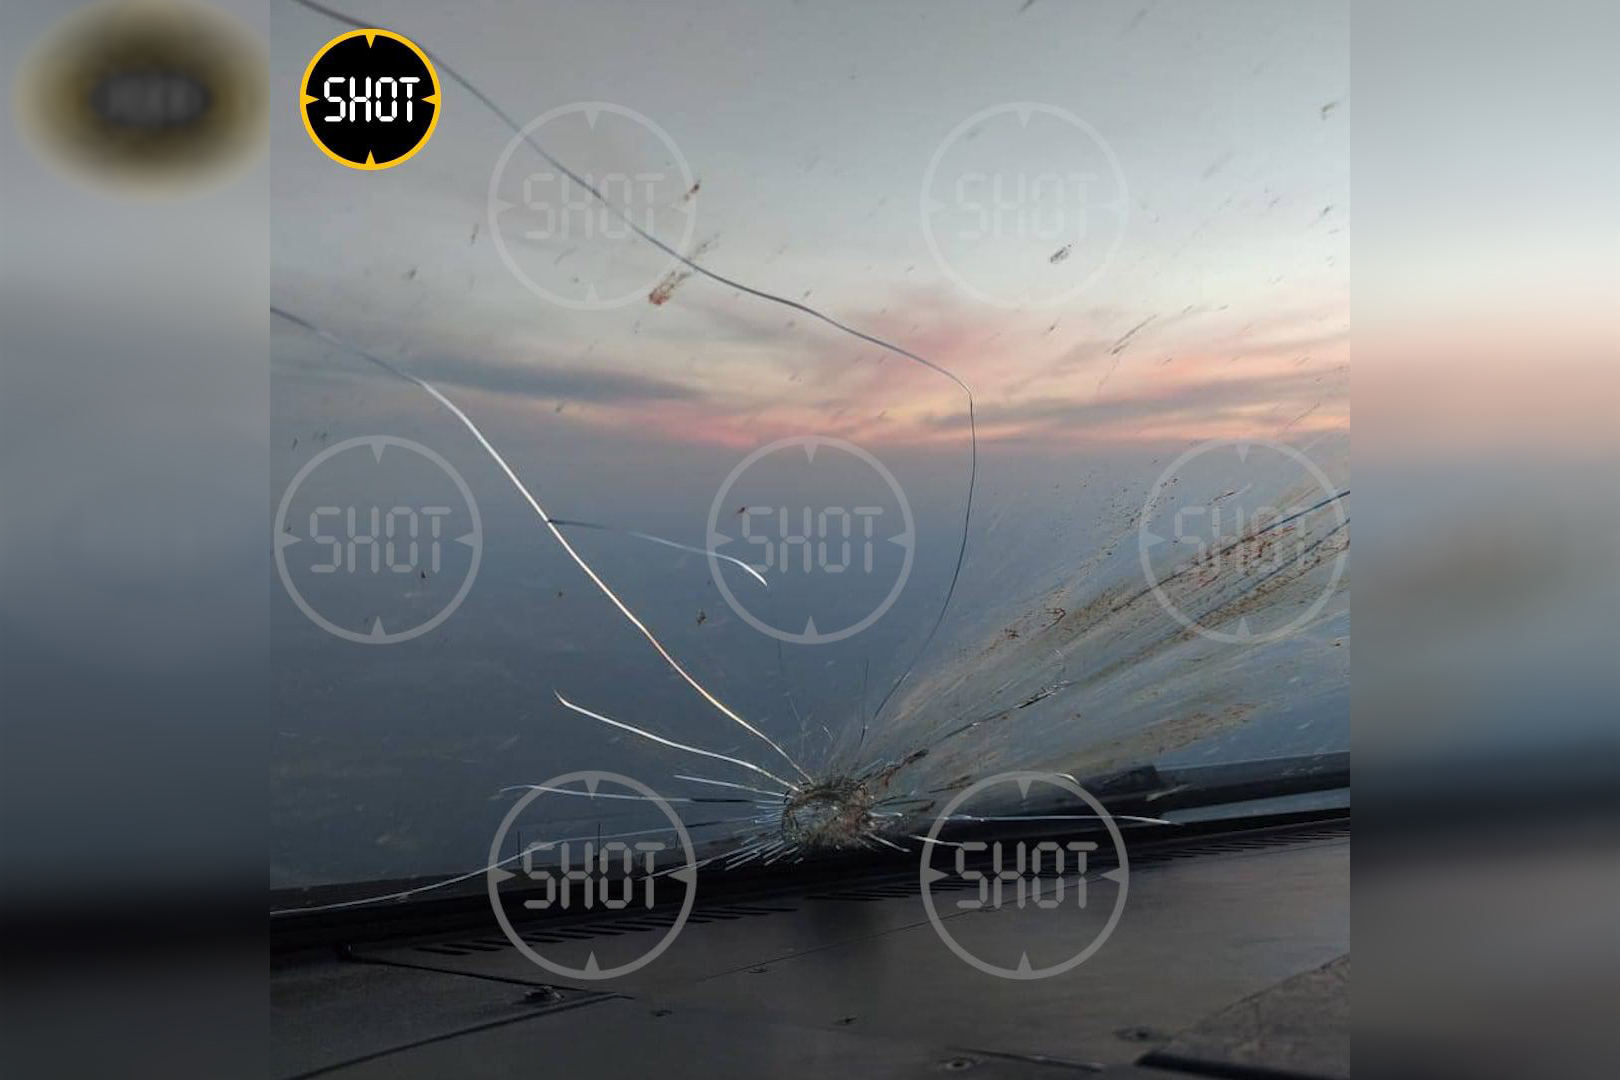 Результат столкновения птицы с лобовым стеклом самолёта "Уральских авиалиний". Фото © Telegram/SHOT